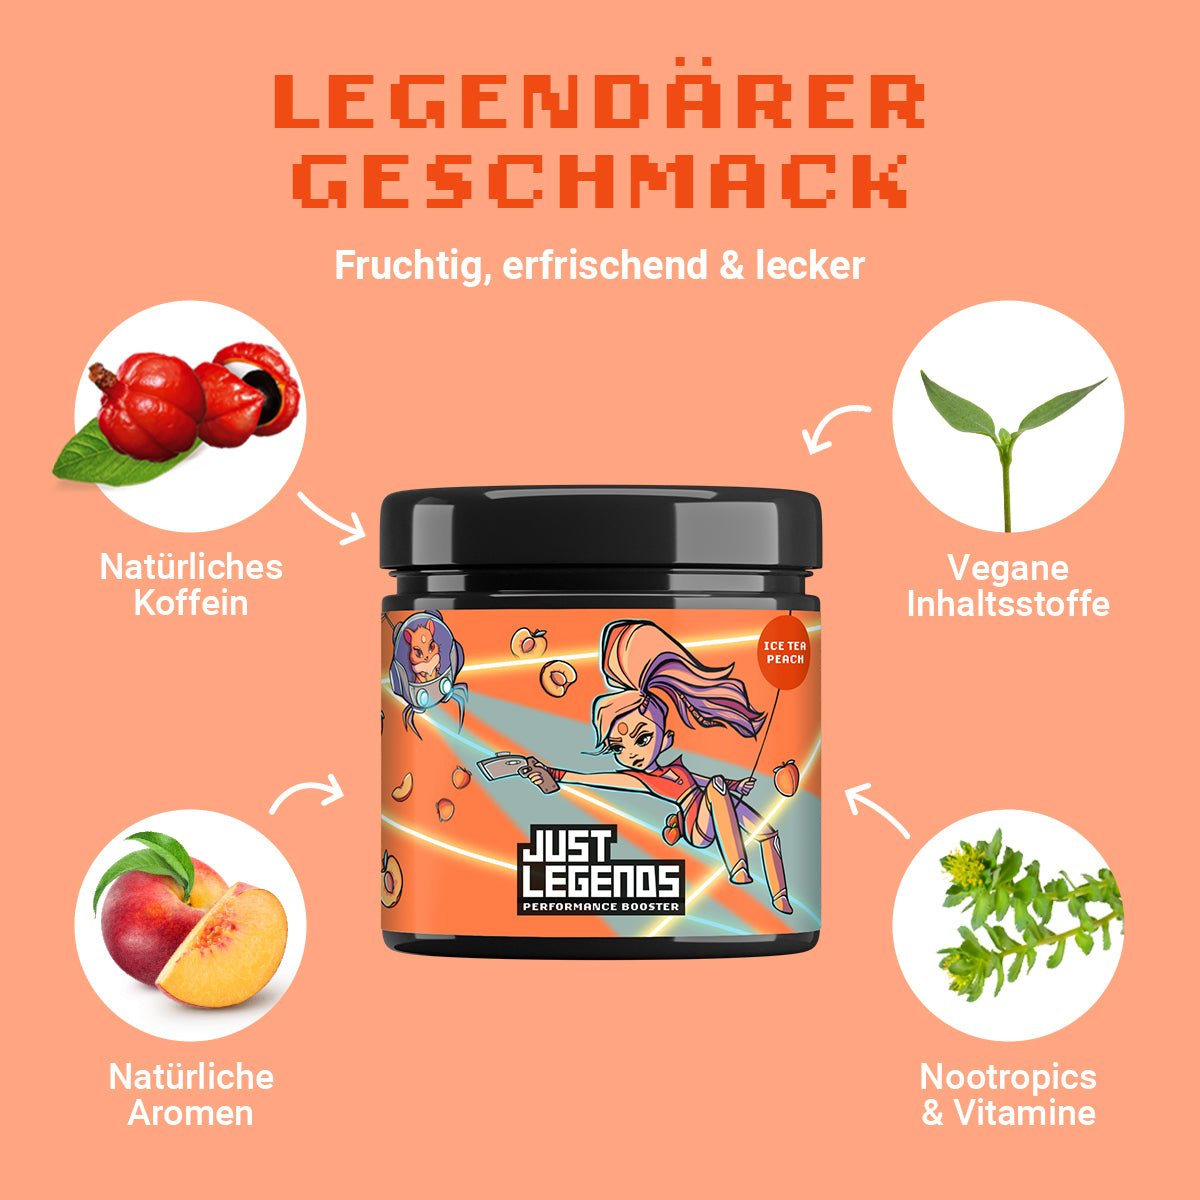 Just Legends Performance Booster Ice Tea Peach | Funktionaler, veganer Performance Booster auf Pulverbasis ohne Zucker, mit wenig Kalorien, vielen Vitaminen und natürlichen Aromen.